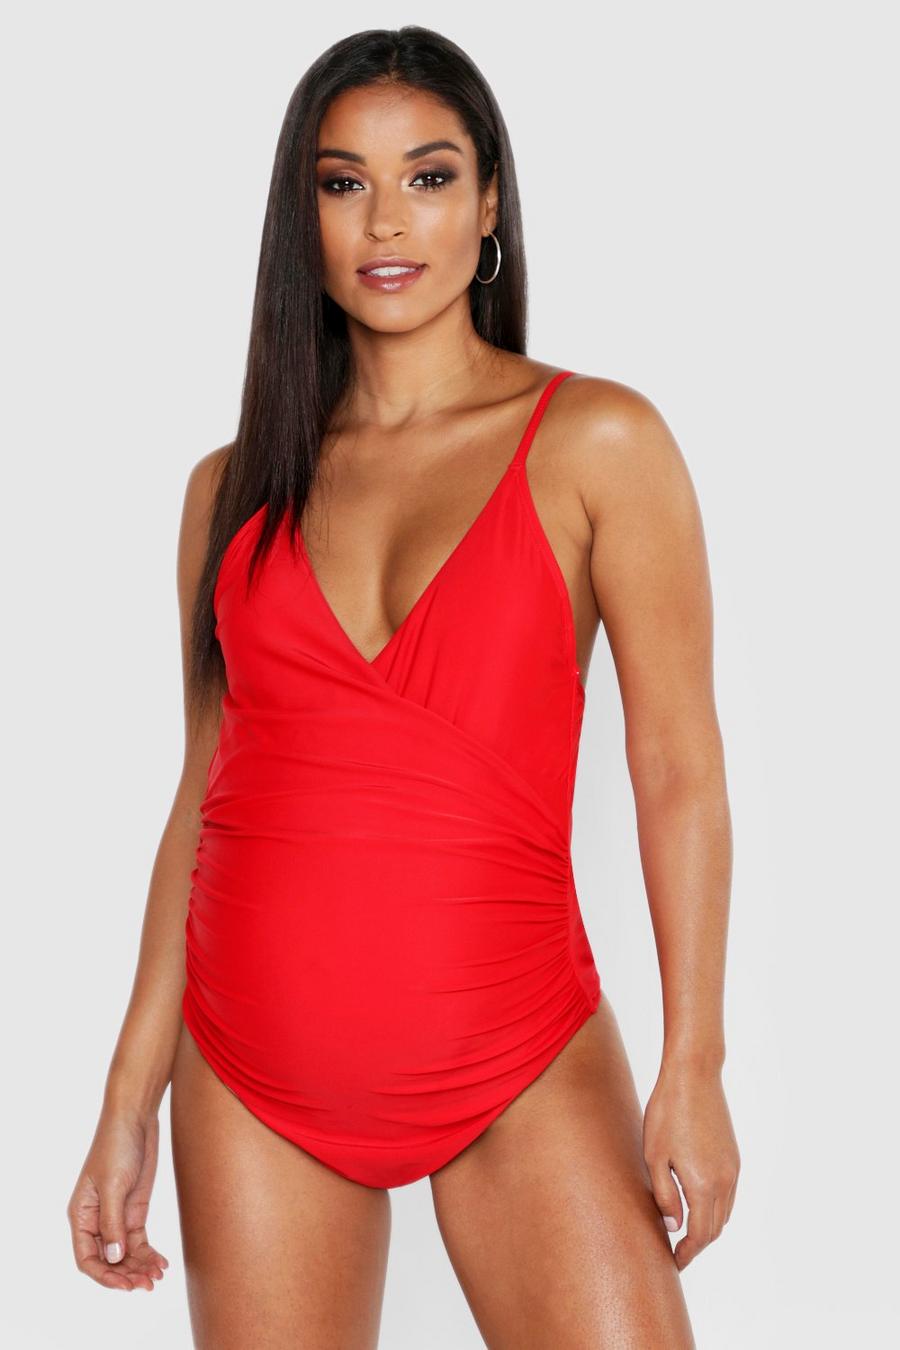 אדום בגד ים מעטפת בטן עם כתפיות מתכווננות בגדי היריון